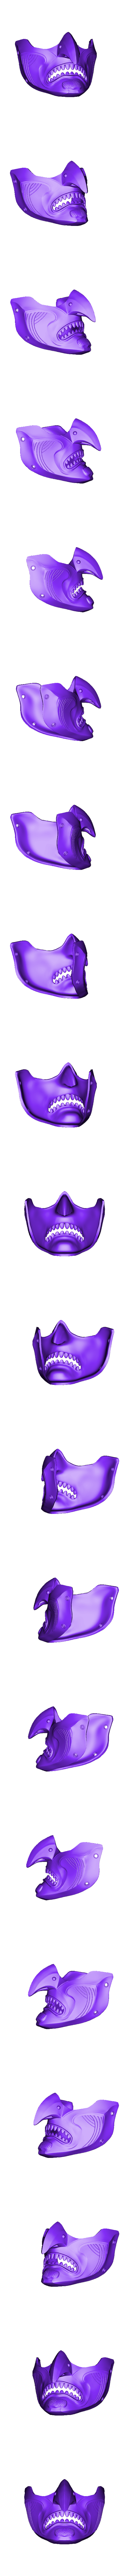 PurityOfWar.stl Descargar archivo OBJ GHOST OF TSUSHIMA - Purity of War Fan art cosplay mask 3D print model • Objeto para impresora 3D, 3DCraftsman